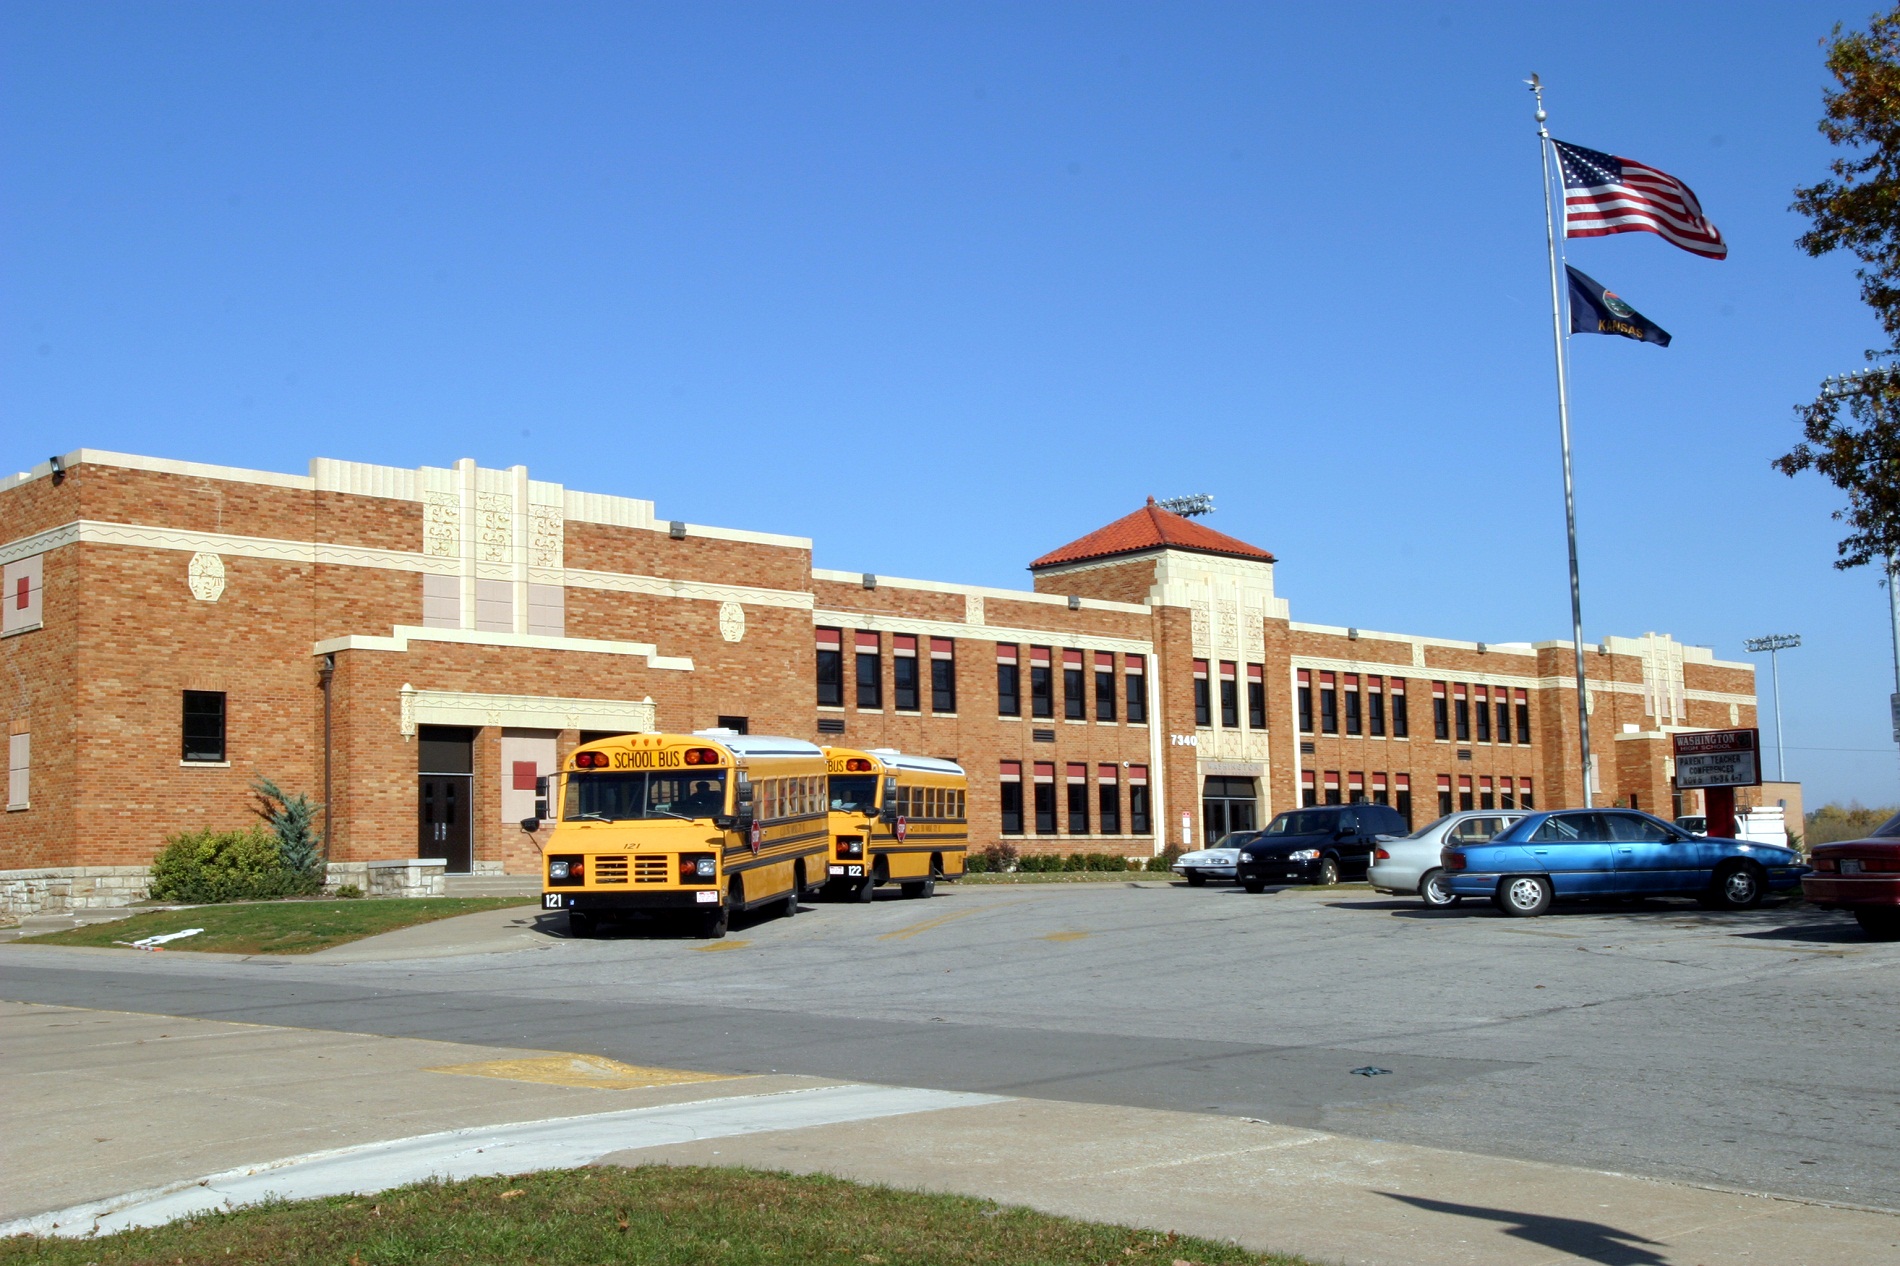 ΗΠΑ: Τρίτη τάξη δημοτικού σε σχολείο έχει λαχειοφόρο με έπαθλο καραμπίνα (φωτό)